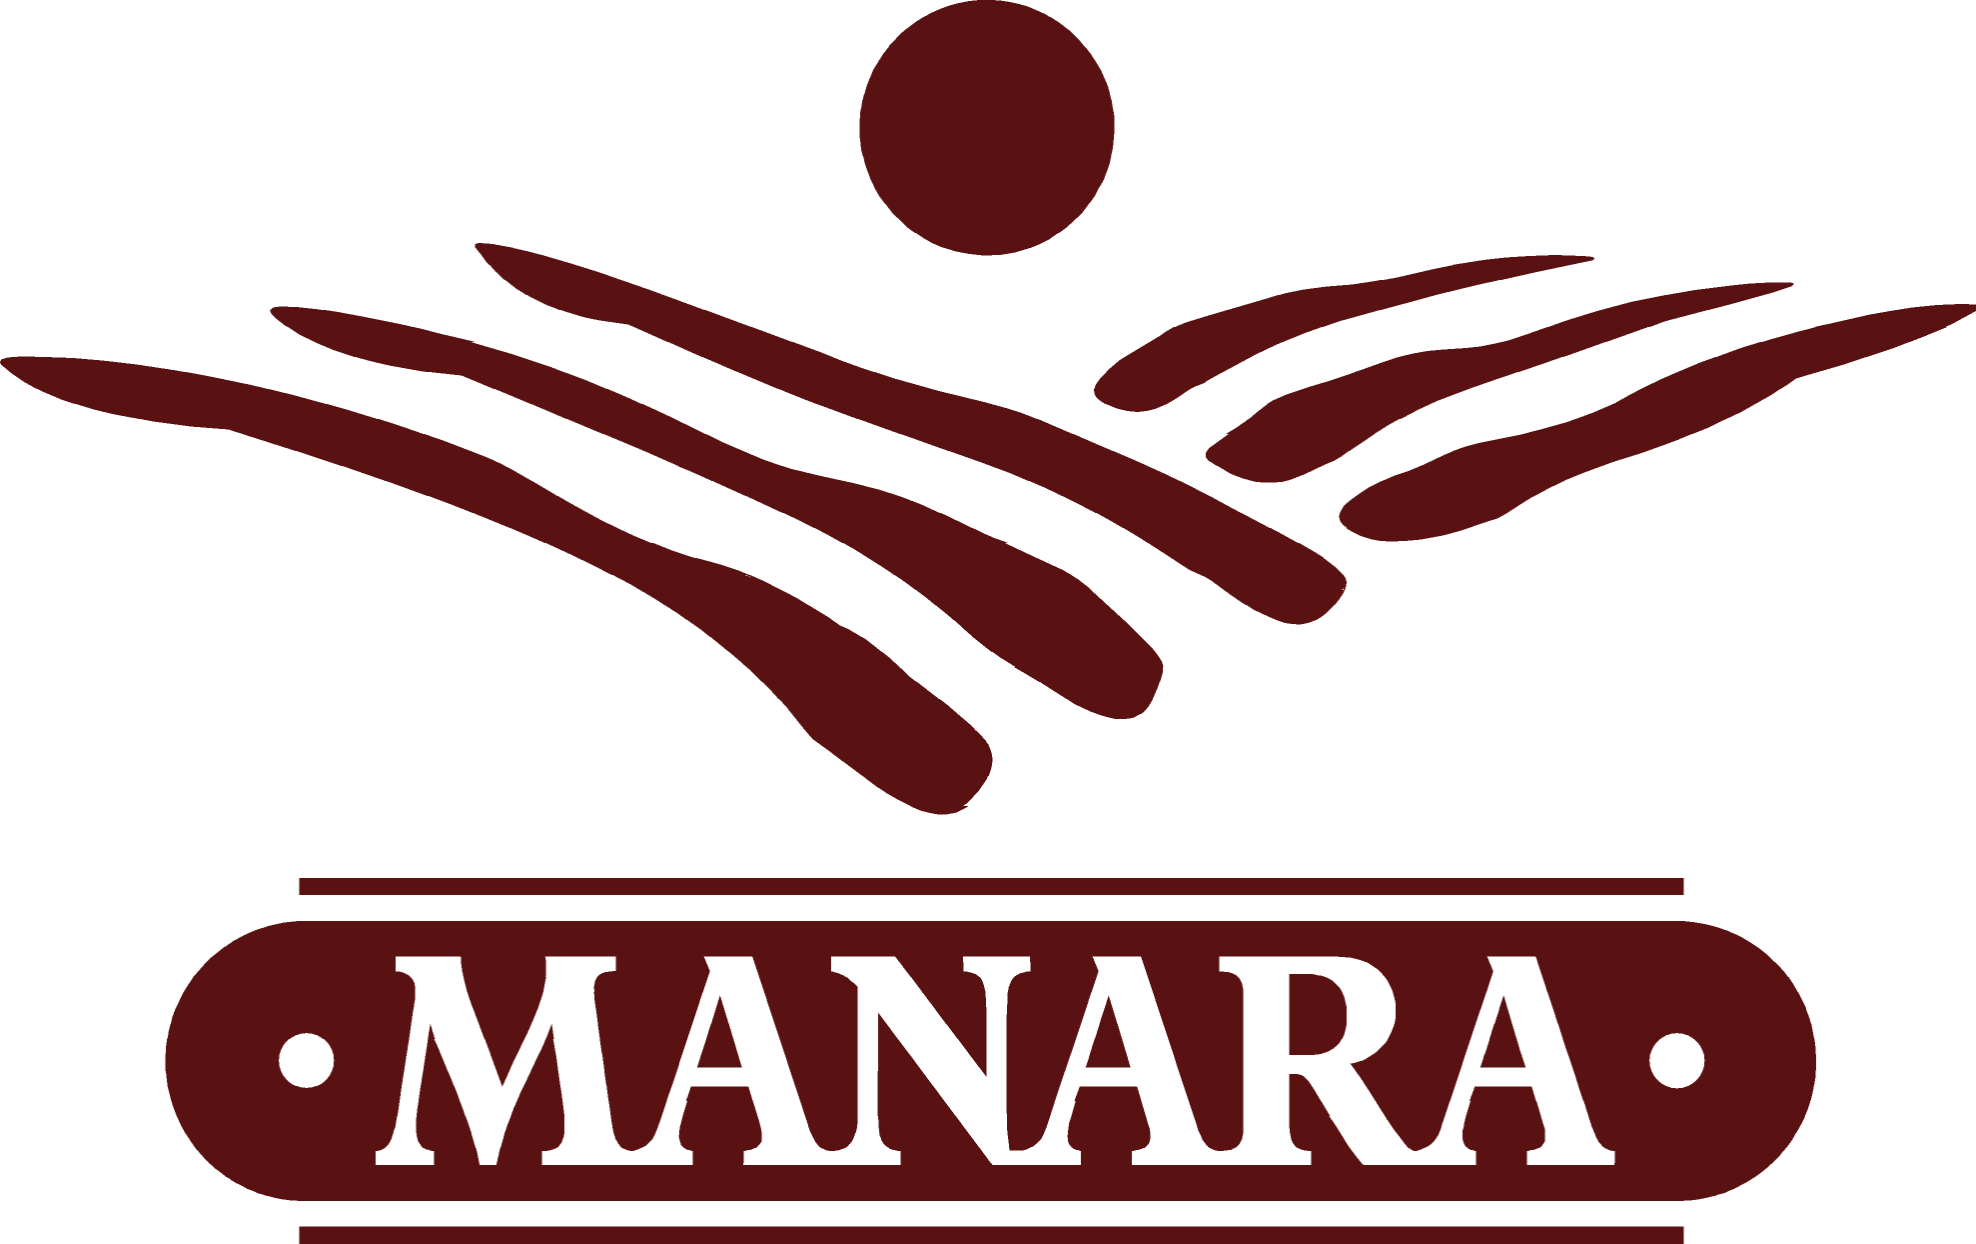 Manara vini - Azienda Agricola della Valpolicella